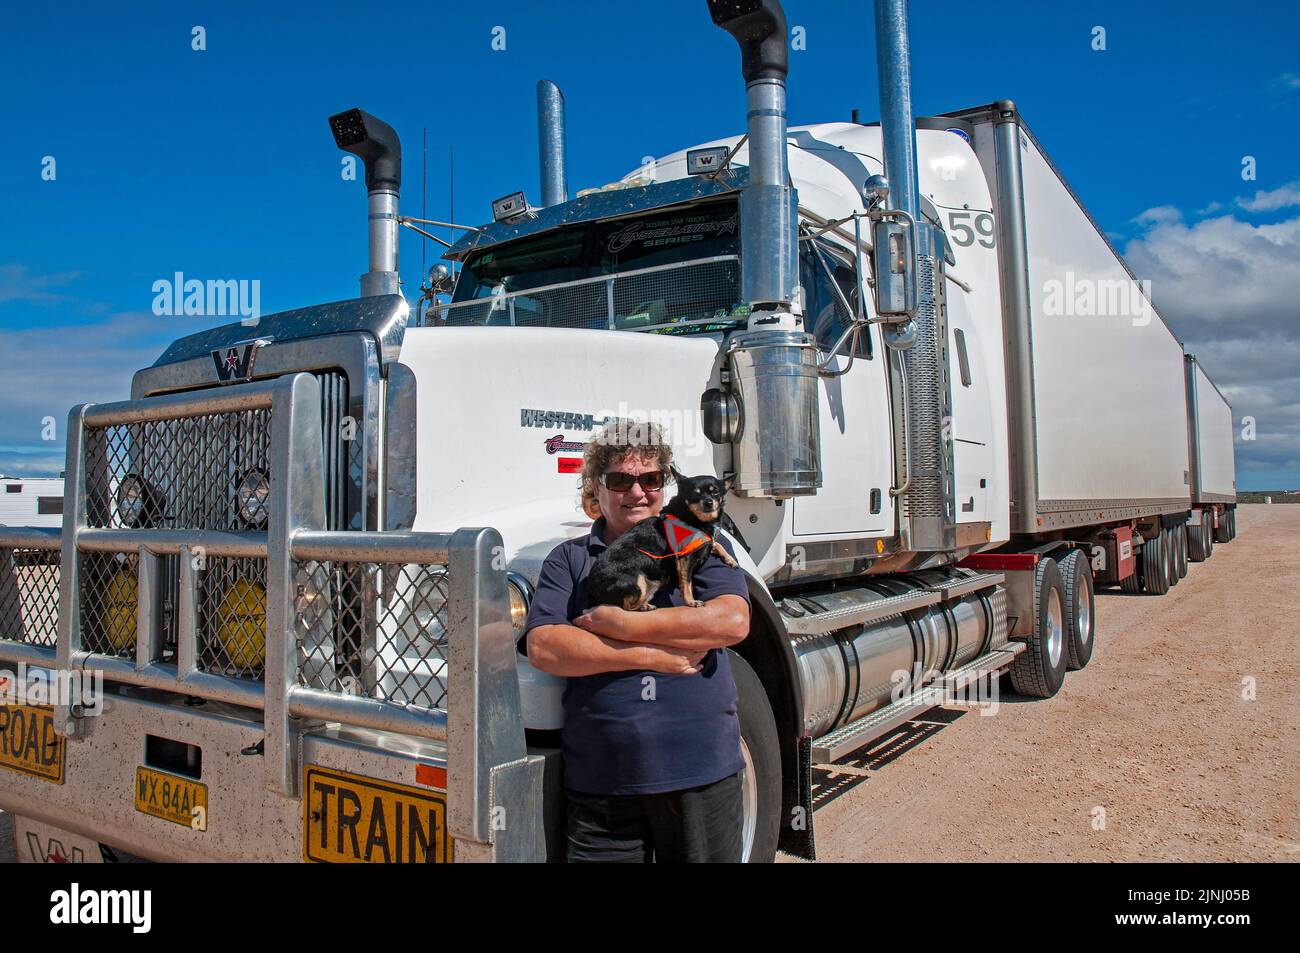 Femme pilote de camion, Faye Francis-Lewis, avec son camion B Double dans lequel elle transporte 75 tonnes de tomates deux fois par semaine entre Perth et Adélaïde, sur une distance de plus de 10 000 km Banque D'Images